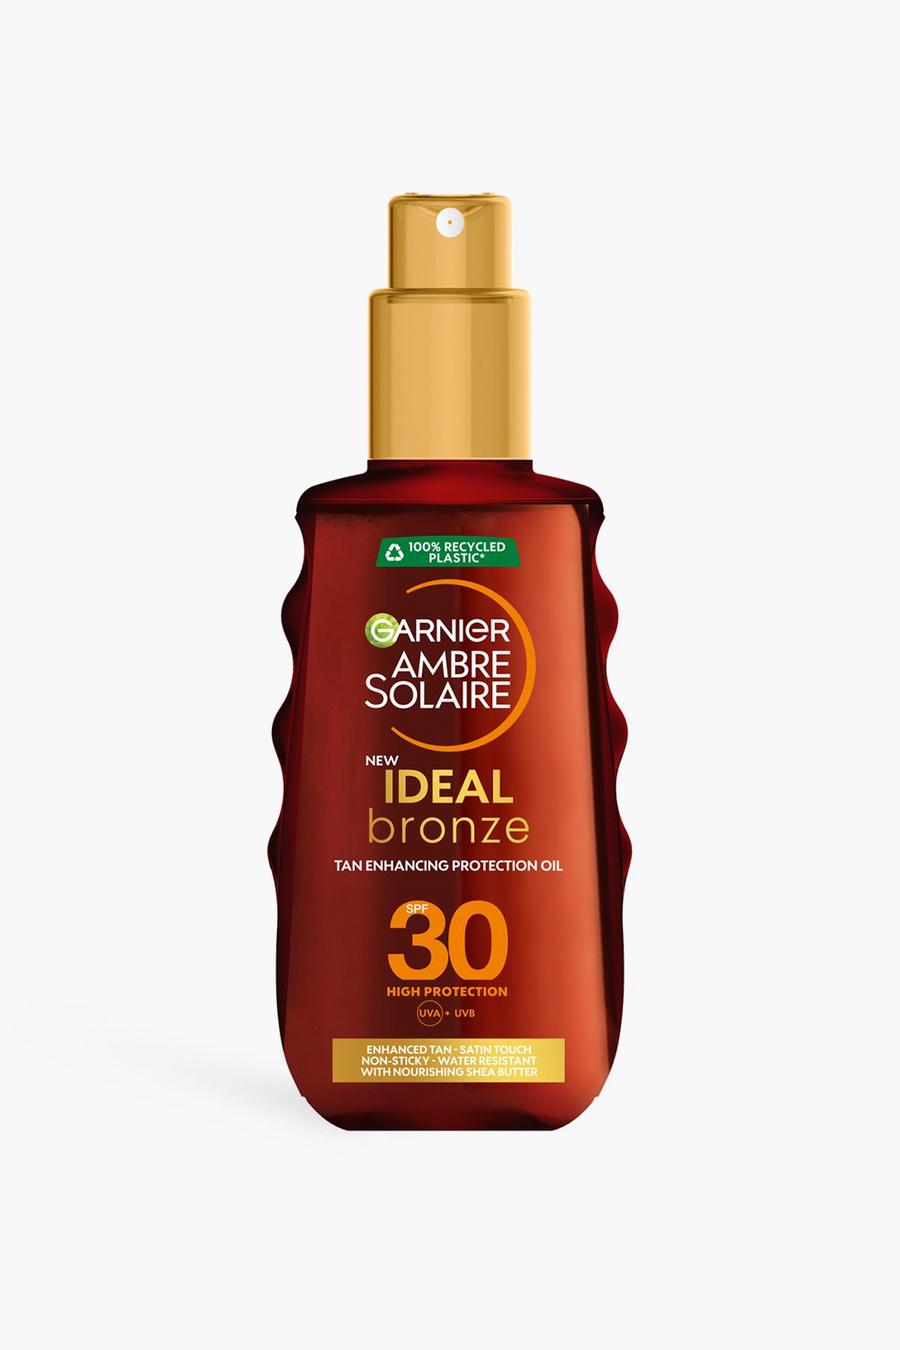 Garnier Ambre Solaire - Crema solare spray Ideal Bronze con protezione SPF 30 dai raggi UVA & UVB - 150 ml (RISPARMI IL 32%), White